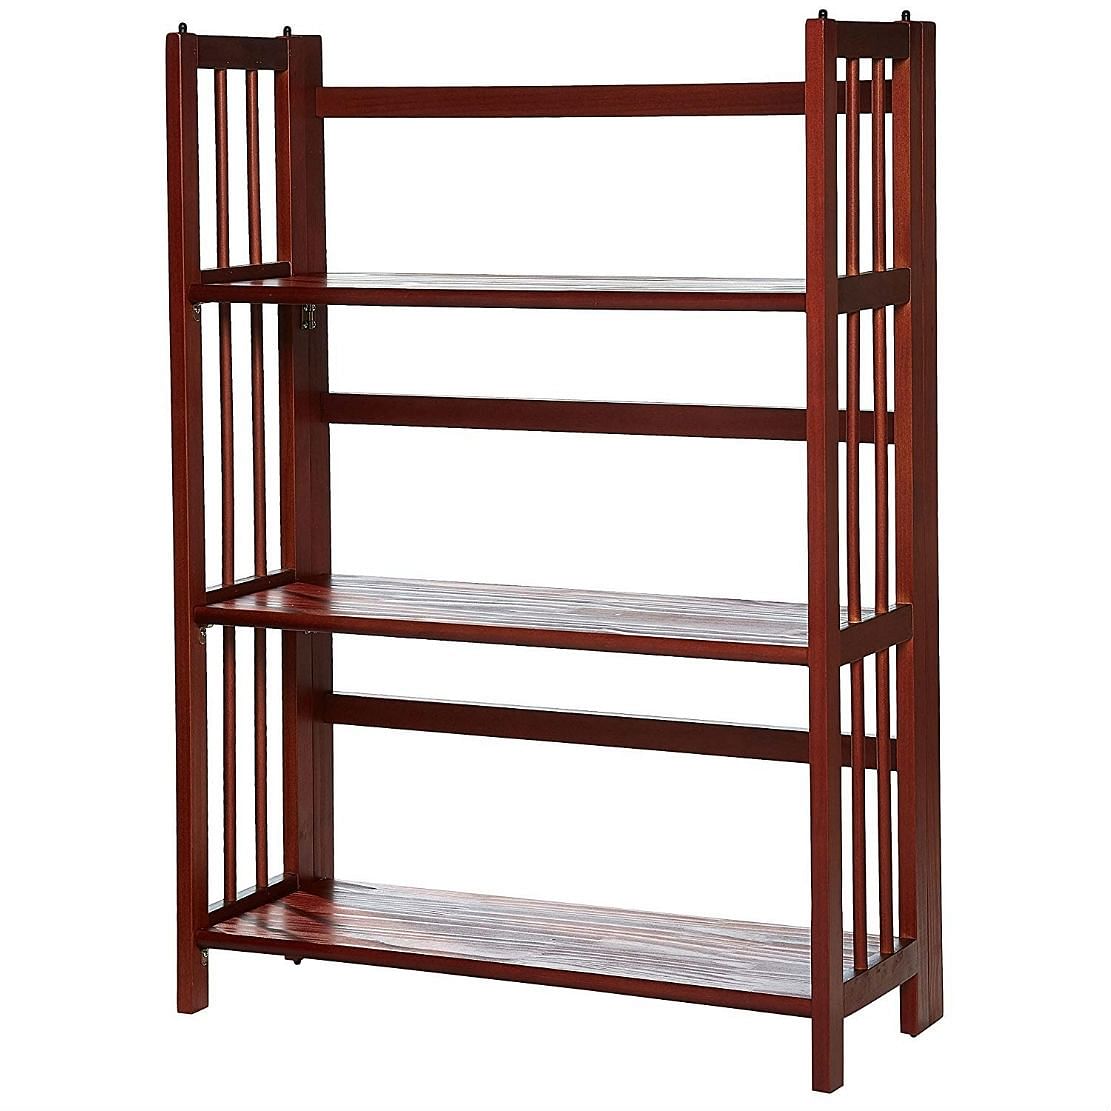 3-Shelf Folding Storage Shelves Bookcase Walnut Wood Finish